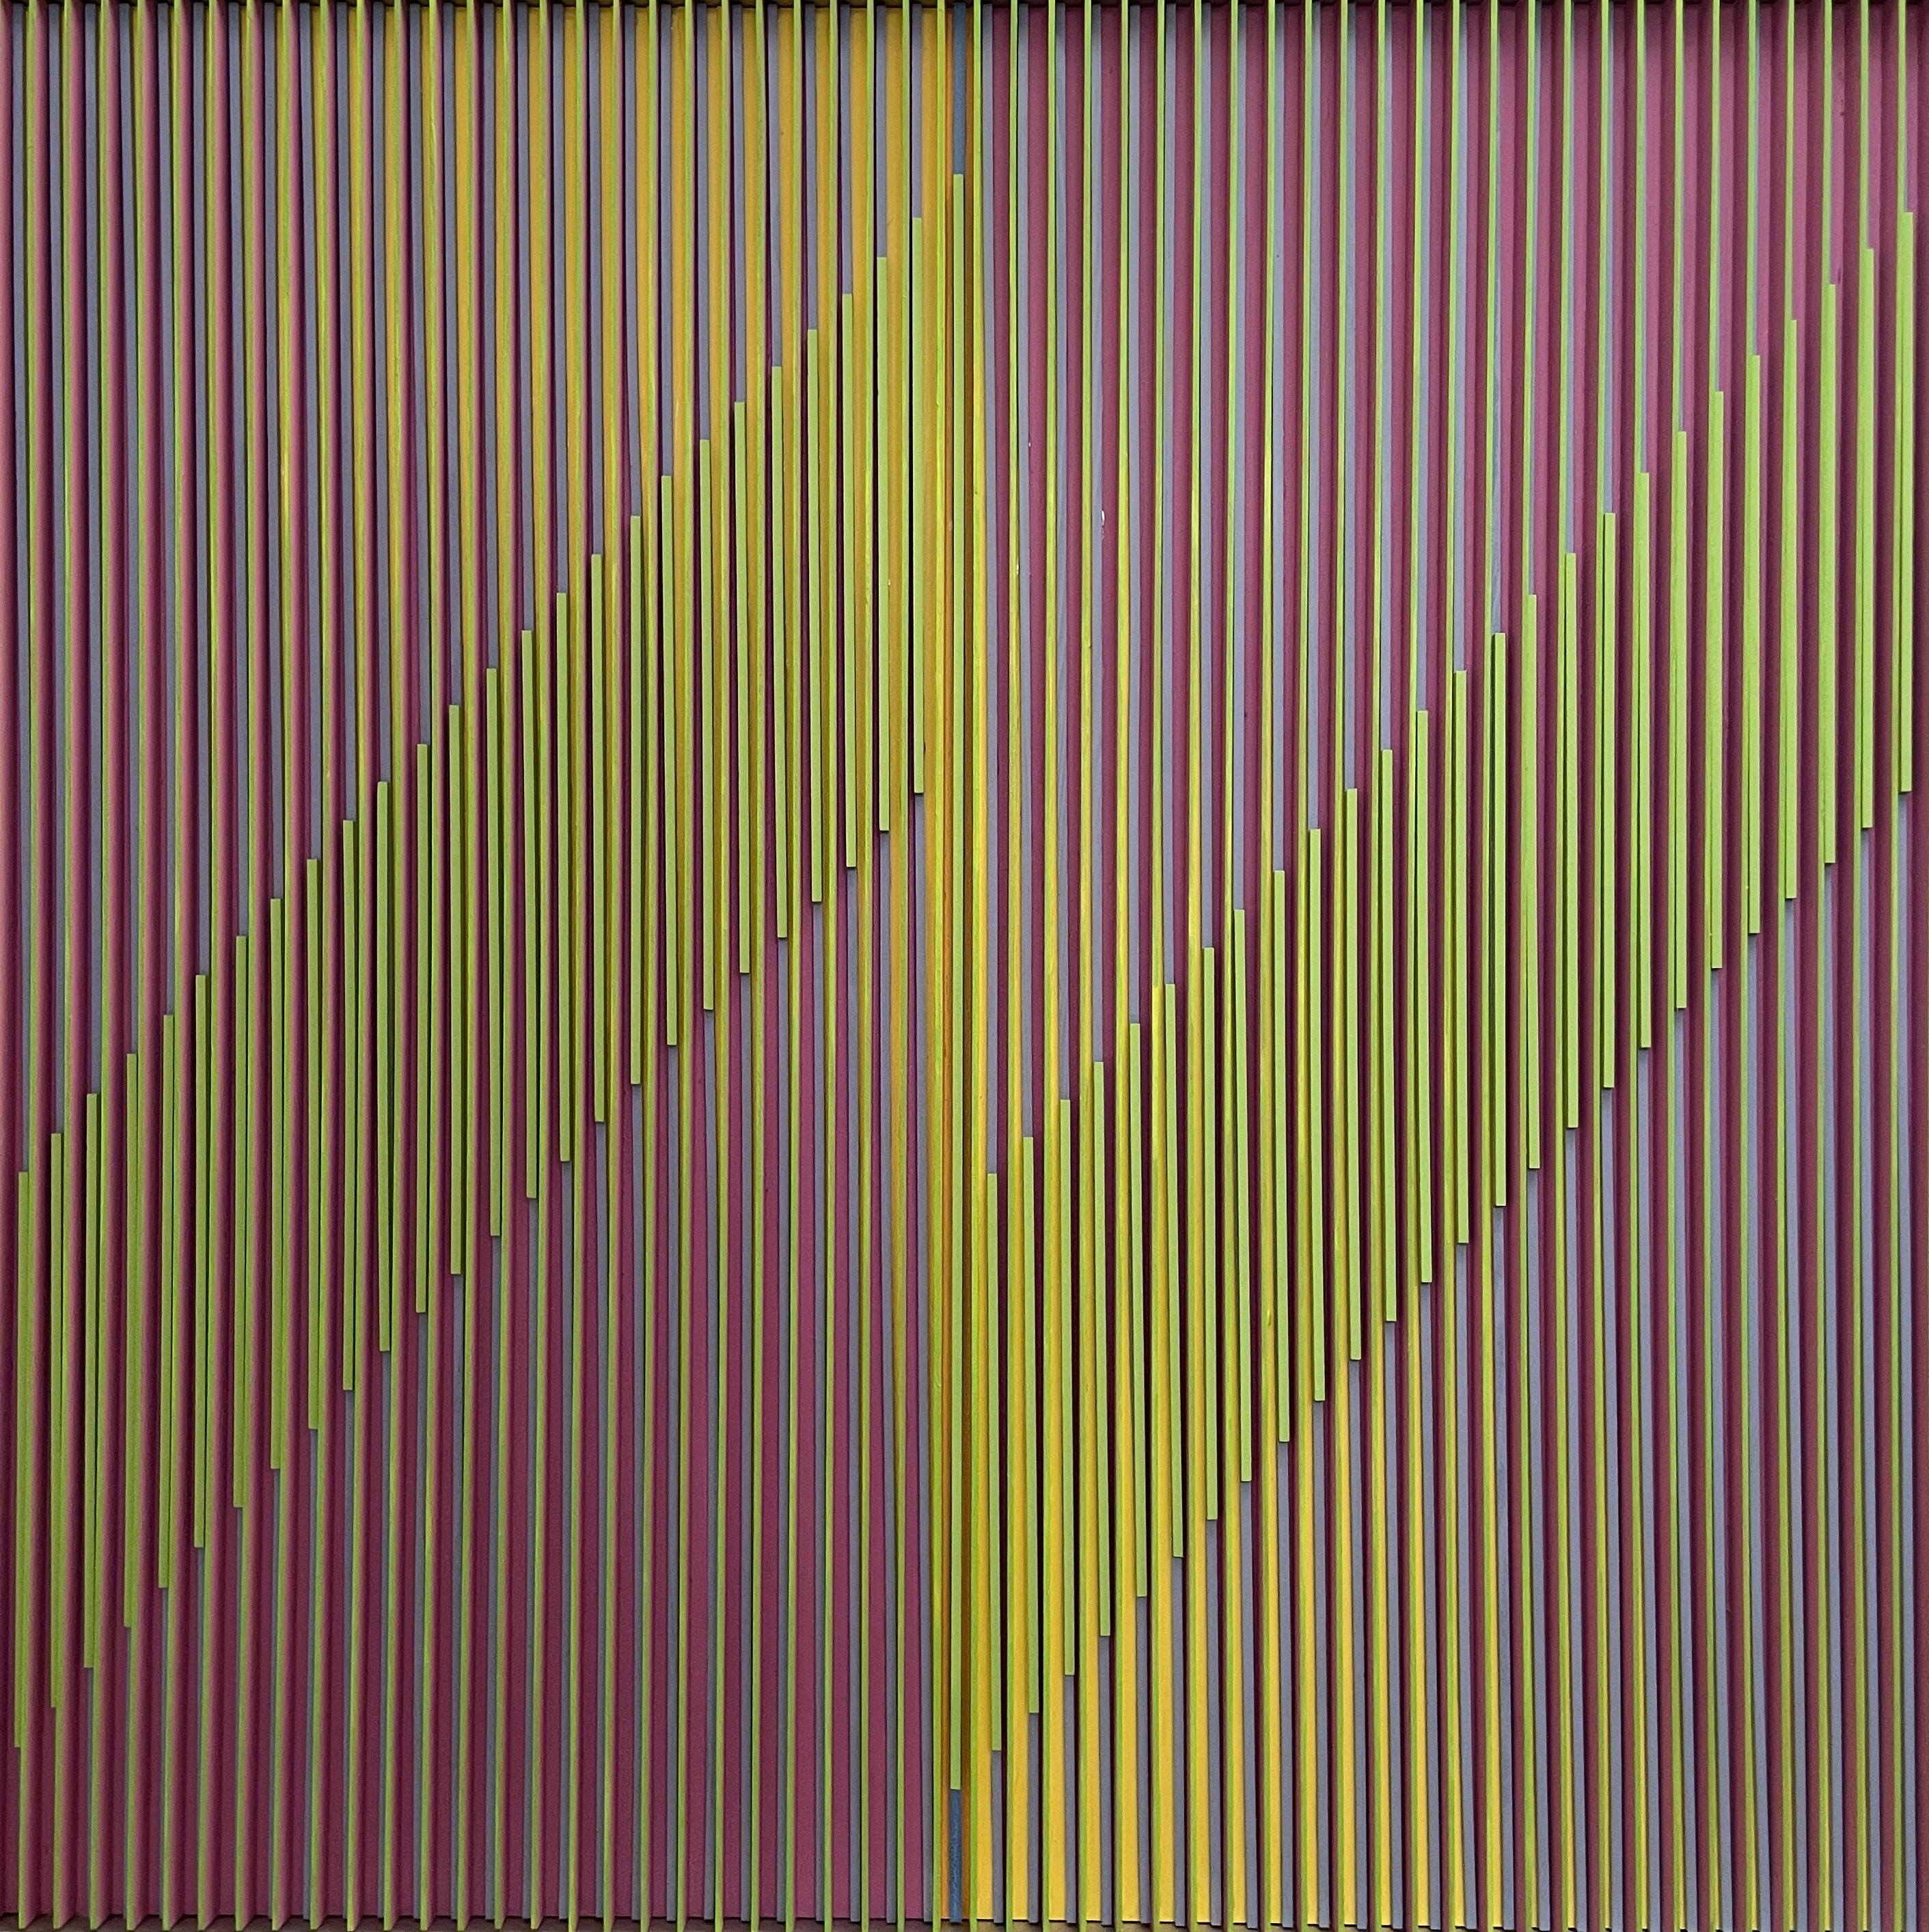 A three dimensional artwork with pink, yellow and green stripes and a reflecting flash.

Ein dreidimensionales Kunstwerk mit rosa, gelben und grünen Streifen und einem reflektierenden Blitz.